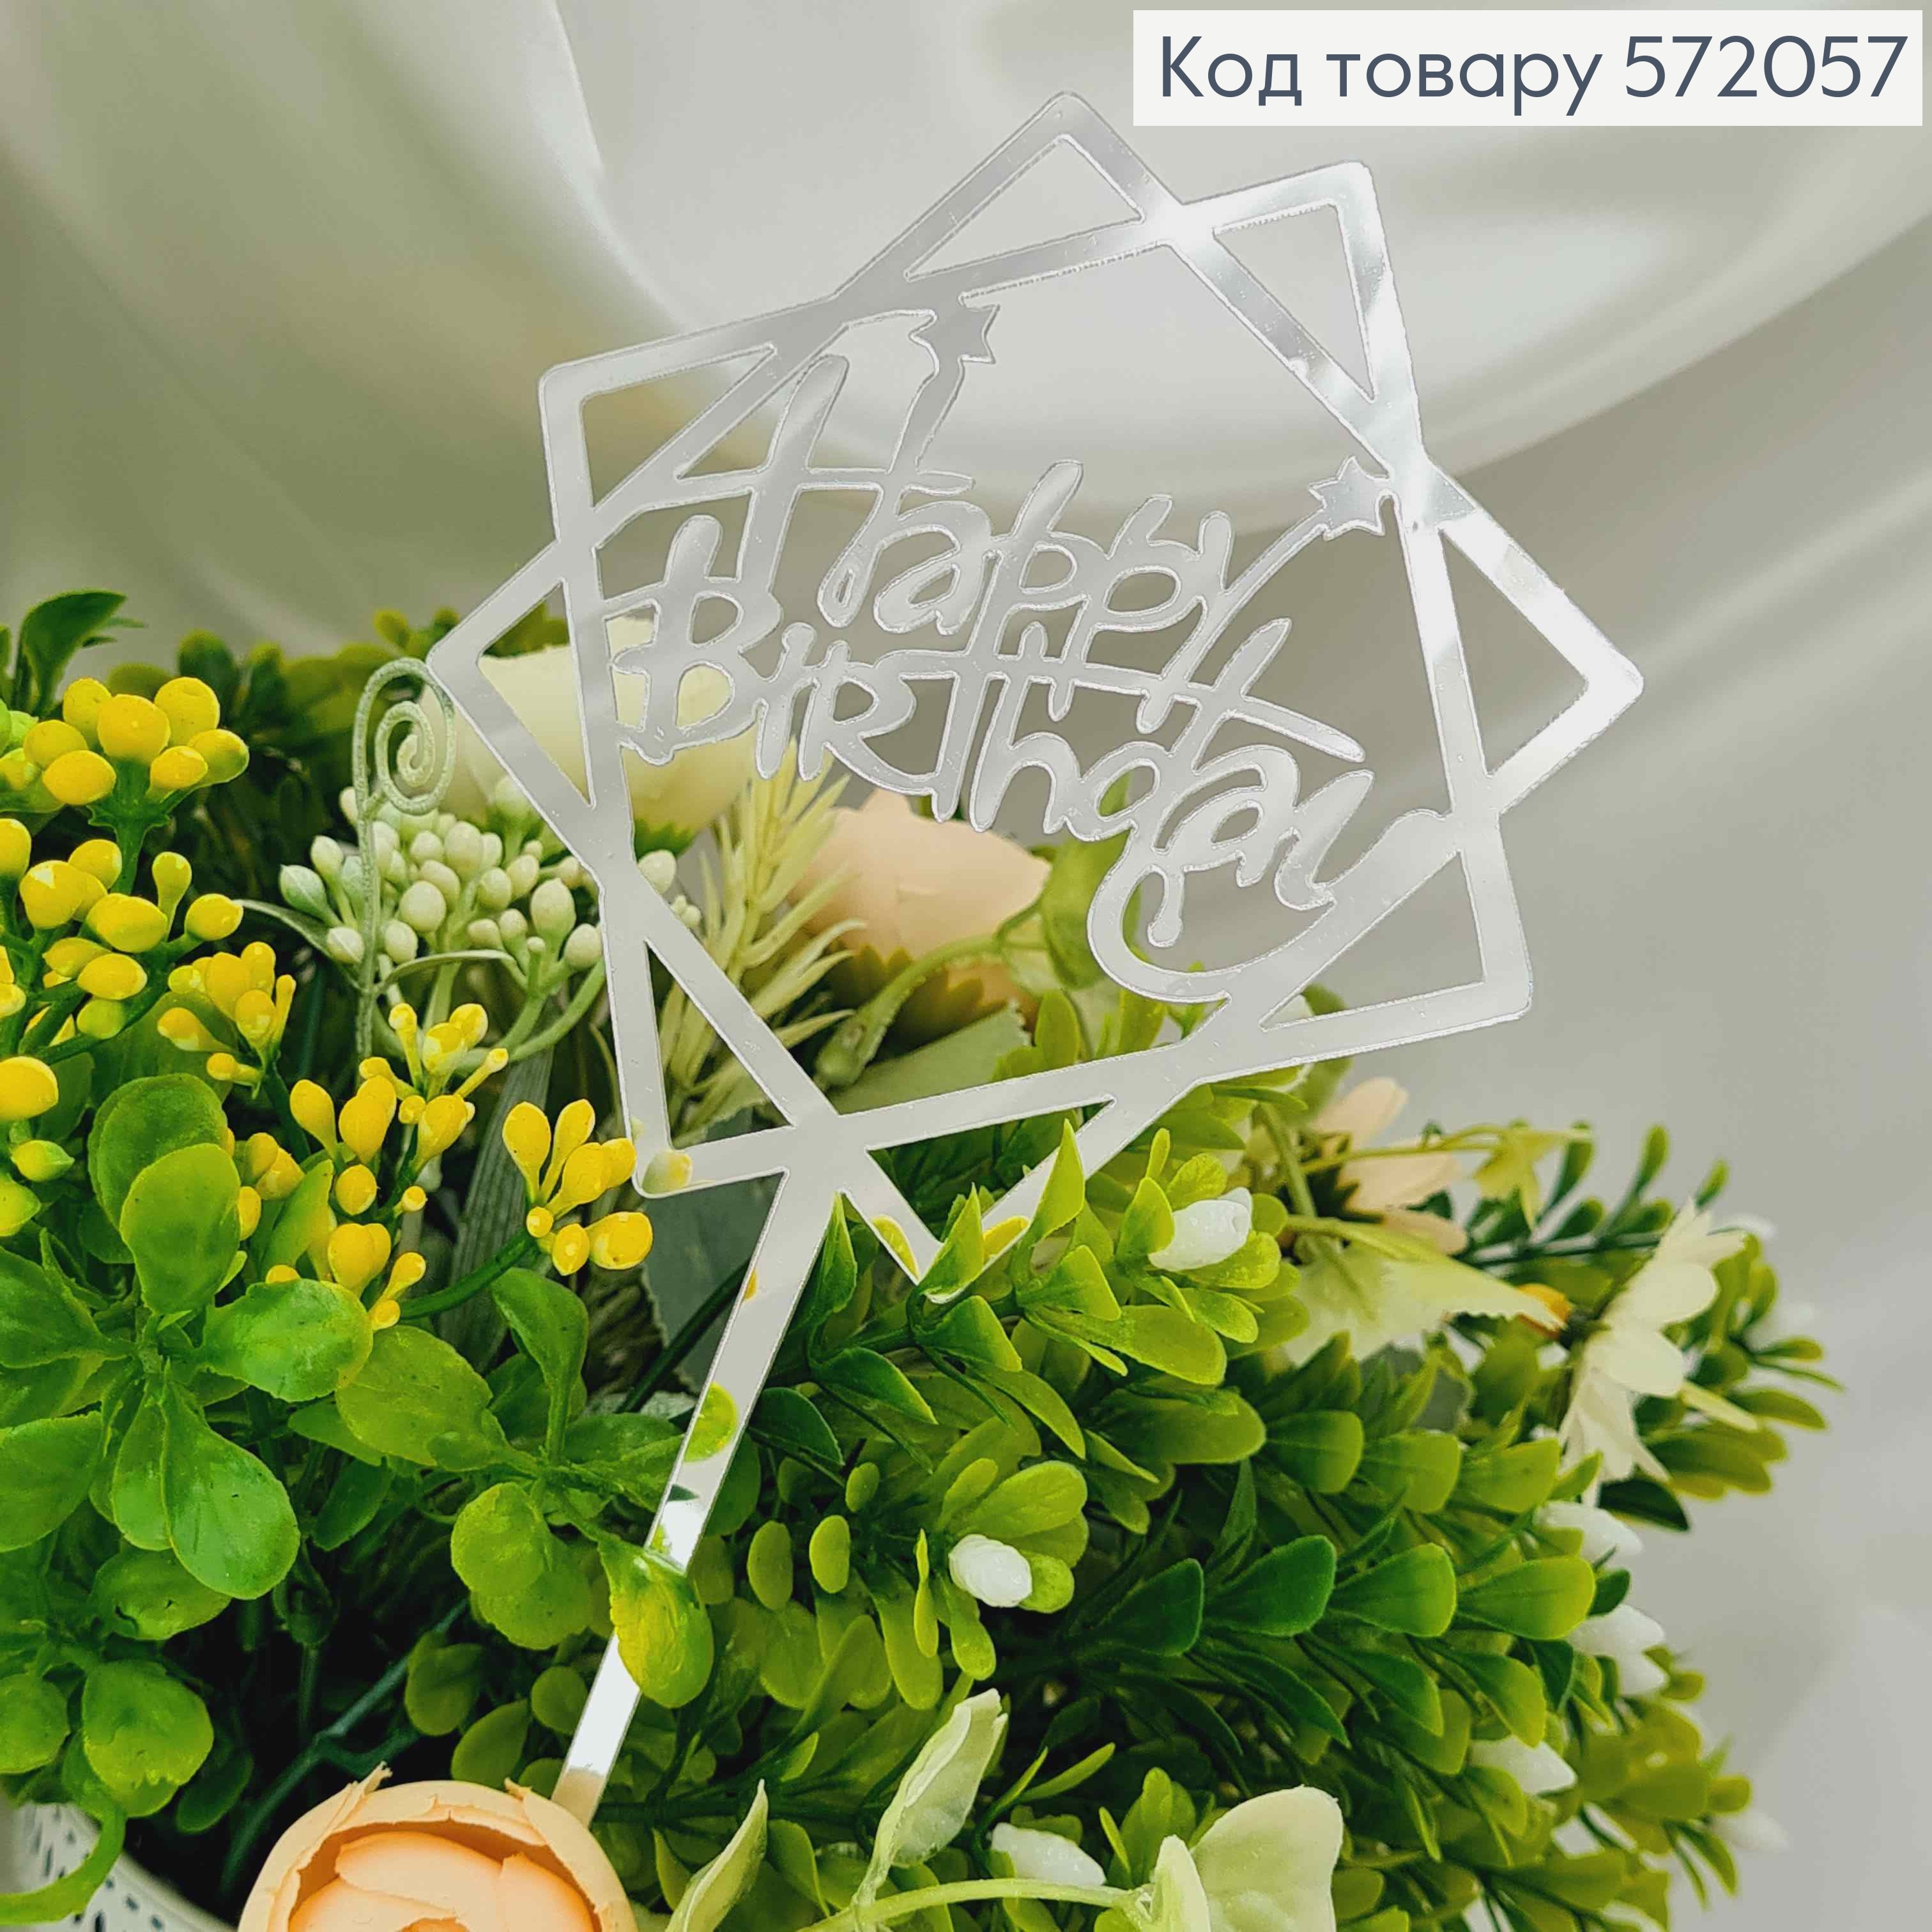 Топпер пластиковий, "Happy Birthday", Срібного кольору, на дзеркальній основі, з фігурною зіркою, 15 572057 фото 4